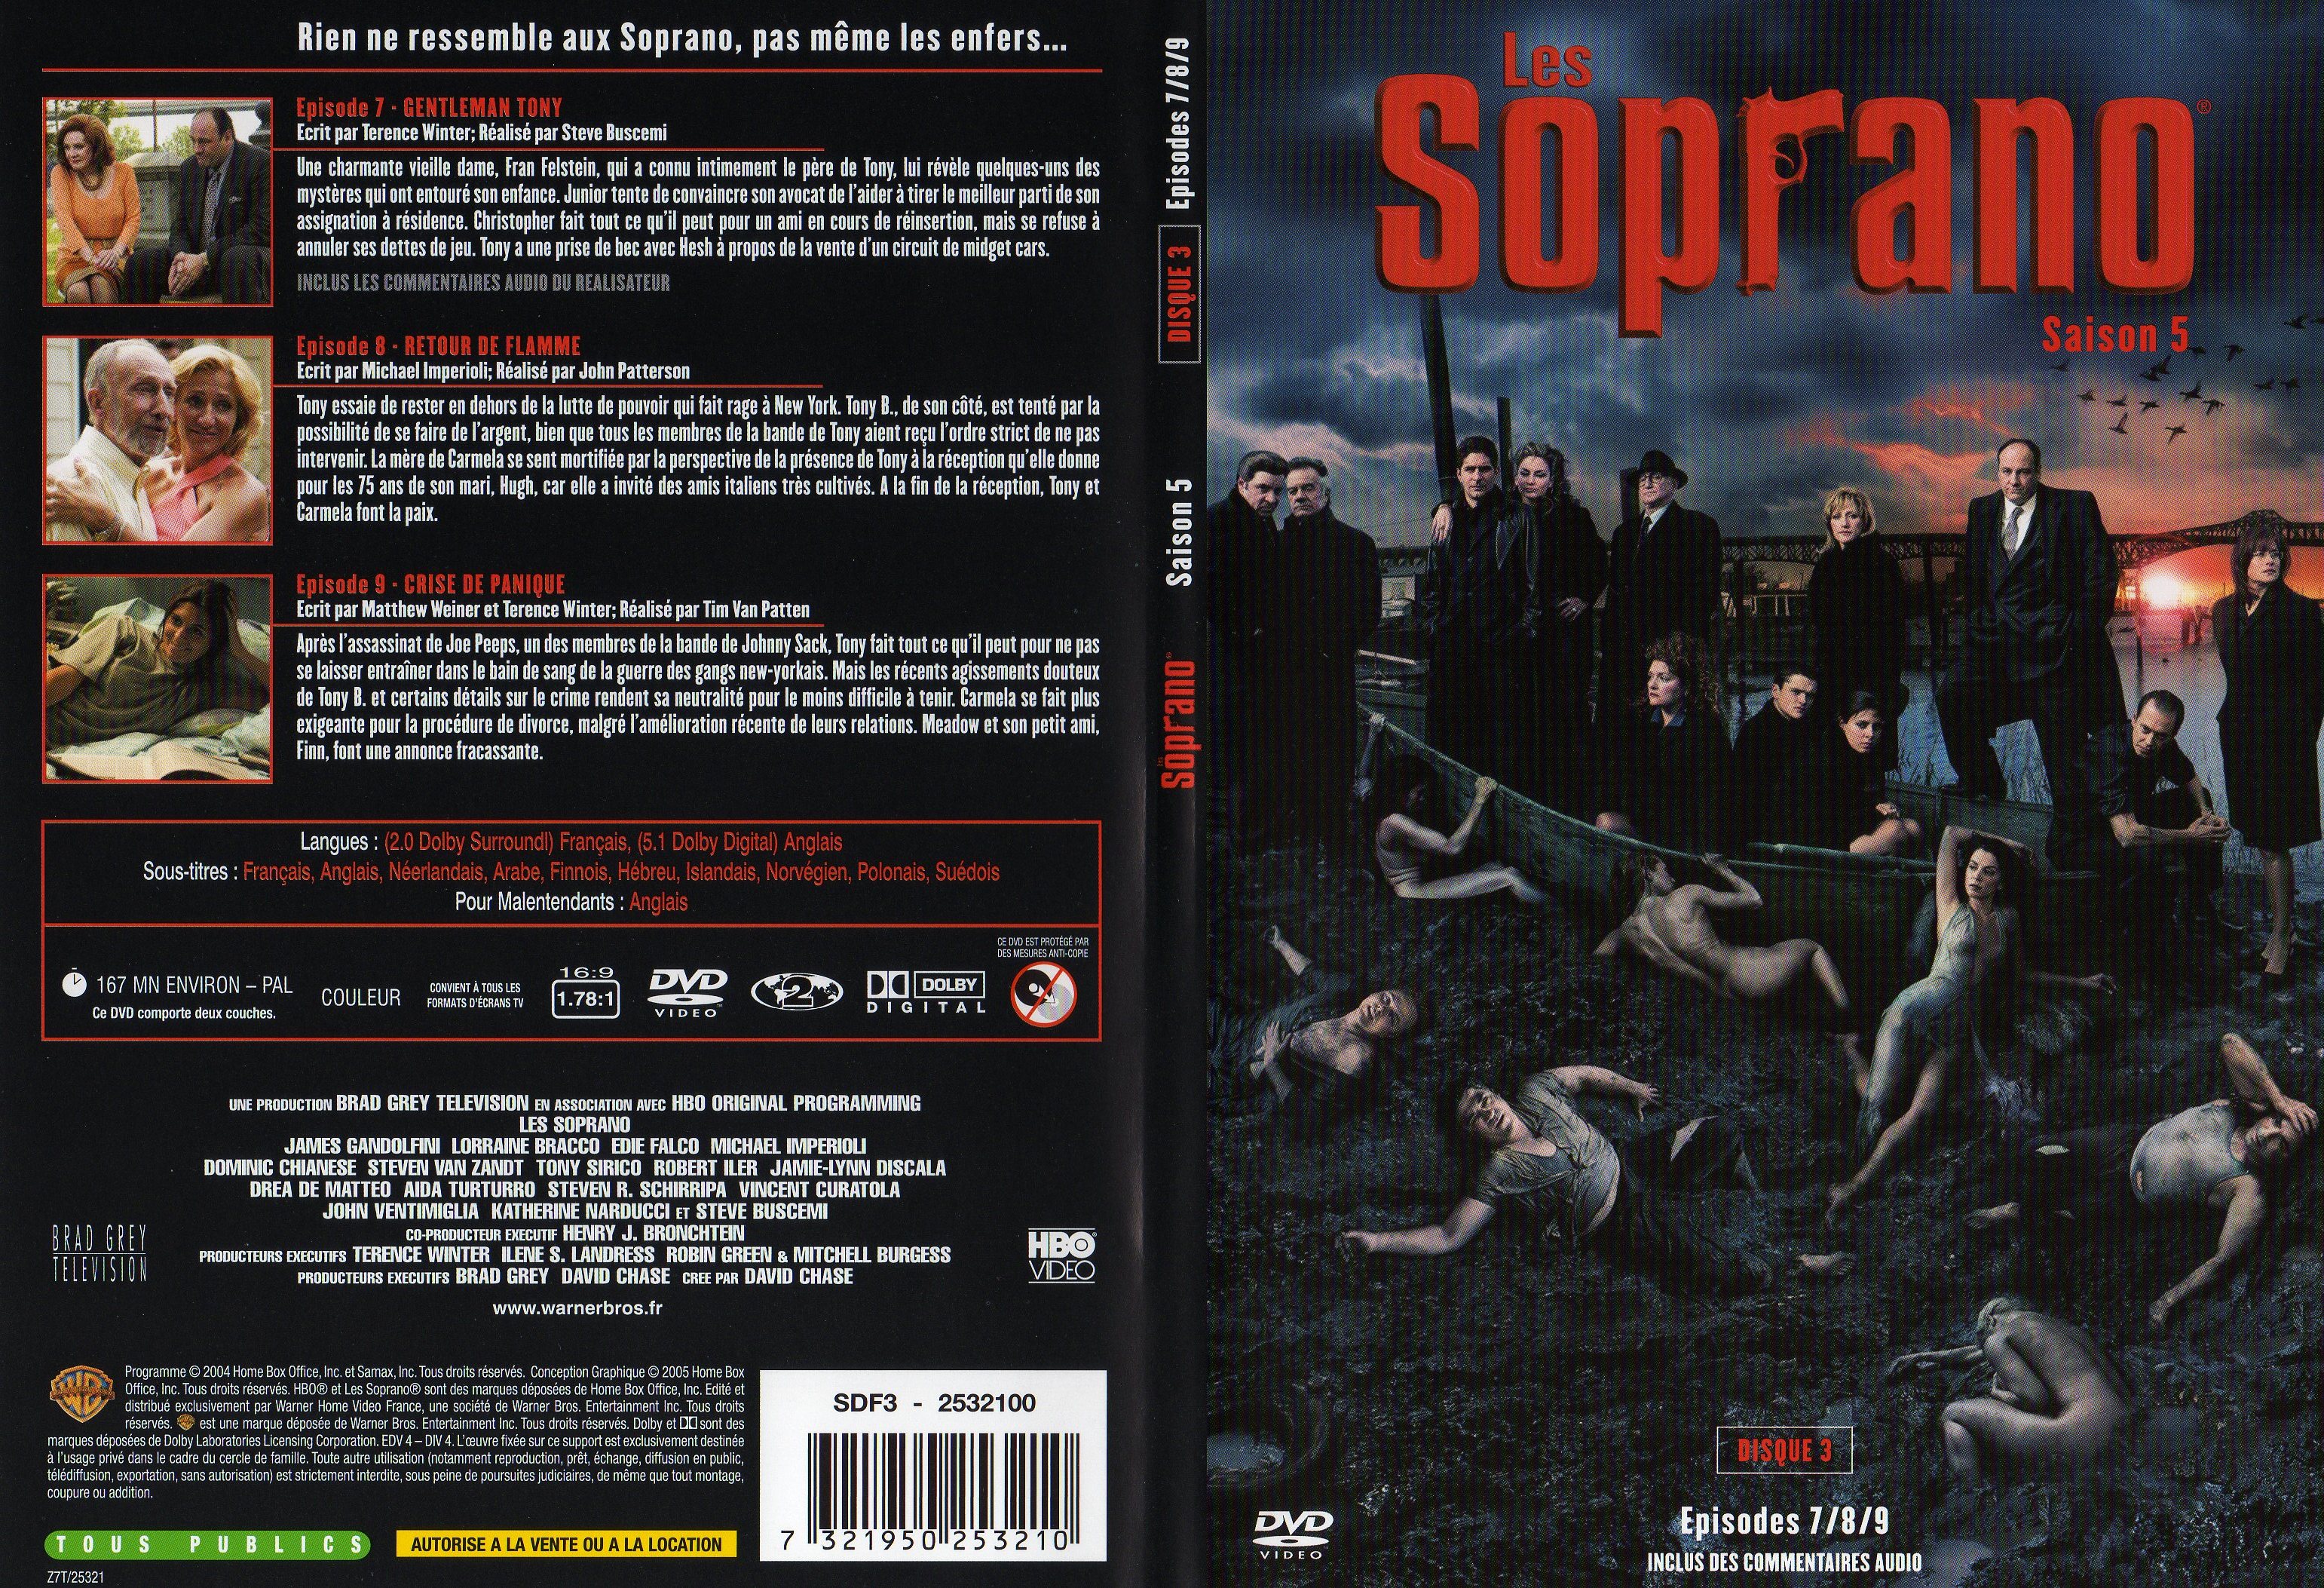 Jaquette DVD Les Soprano saison 5 DVD 3